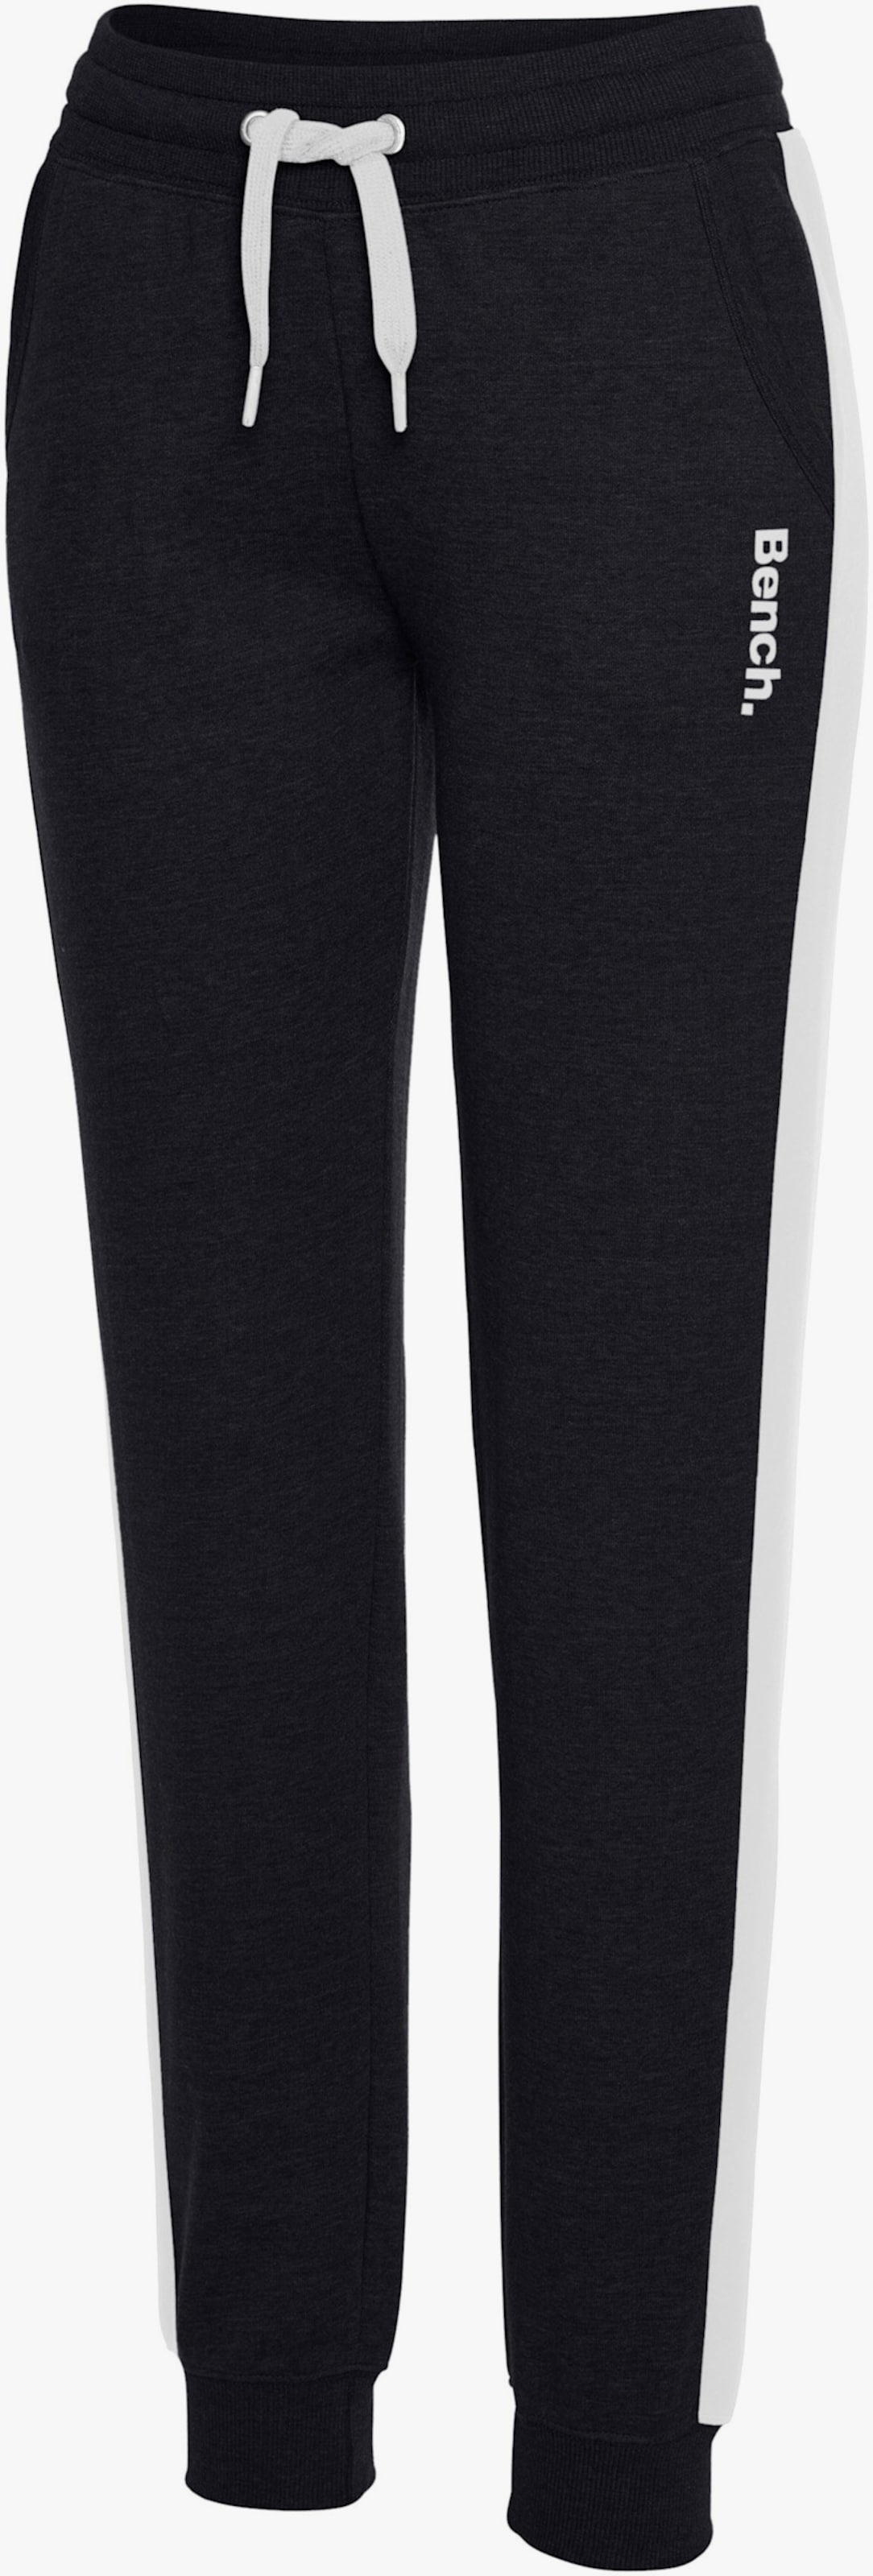 Pantalon molletonné - noir-blanc